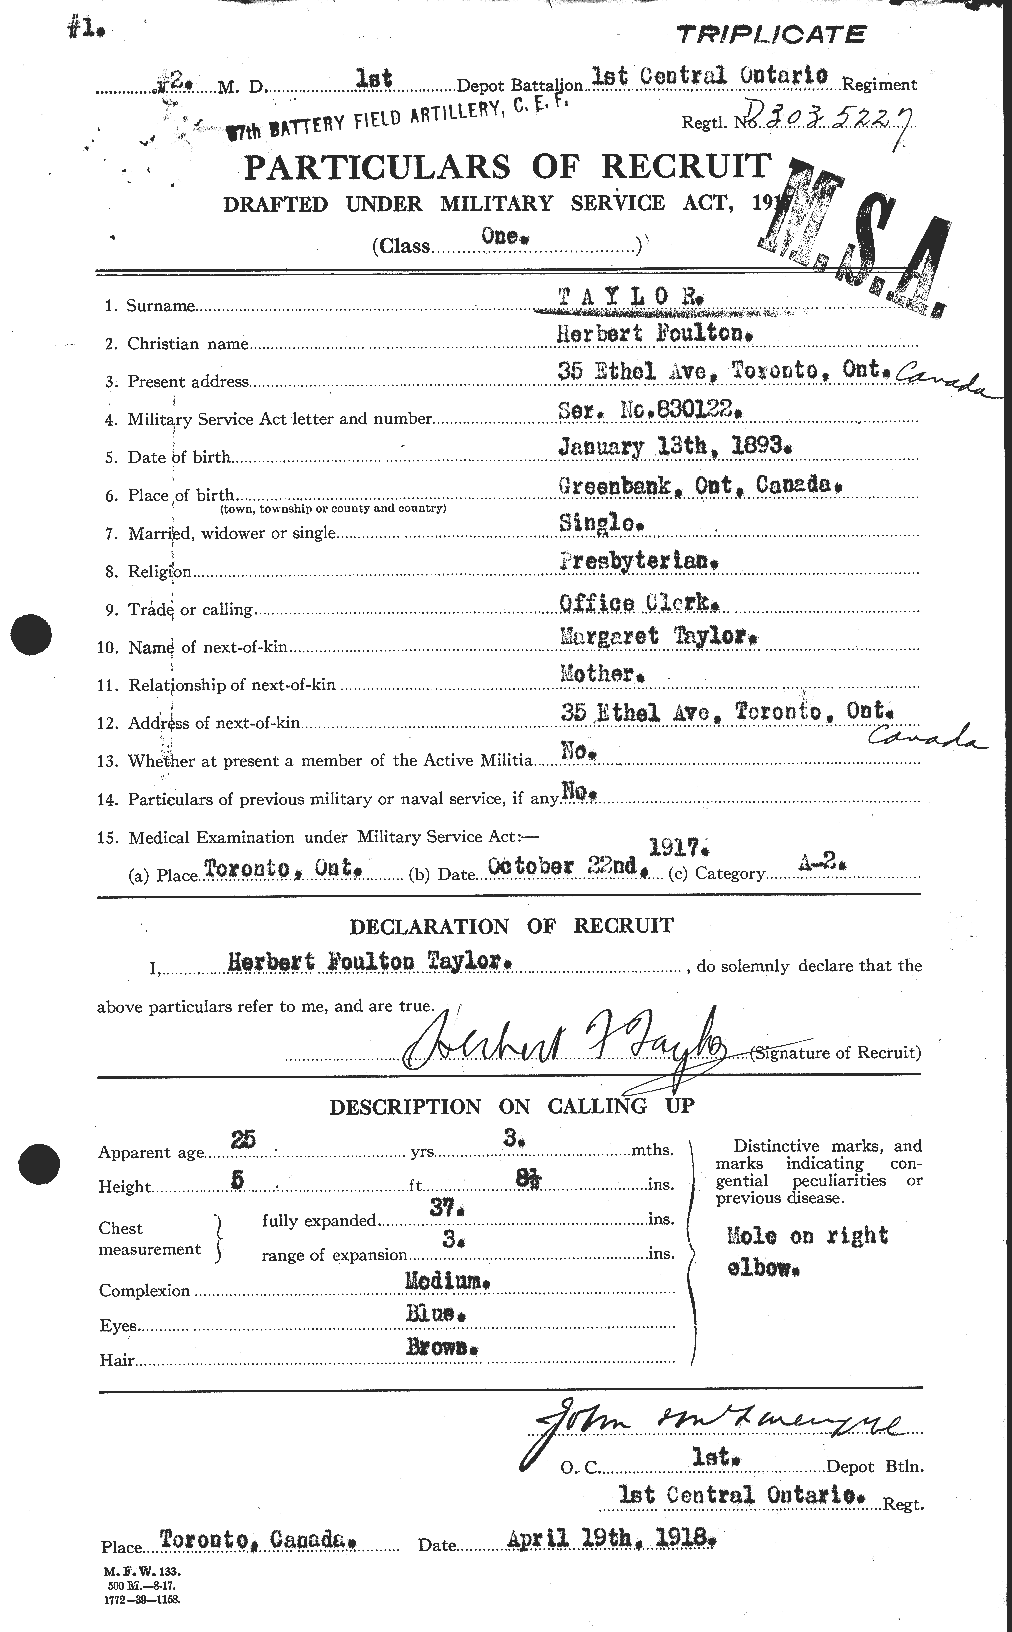 Dossiers du Personnel de la Première Guerre mondiale - CEC 626568a